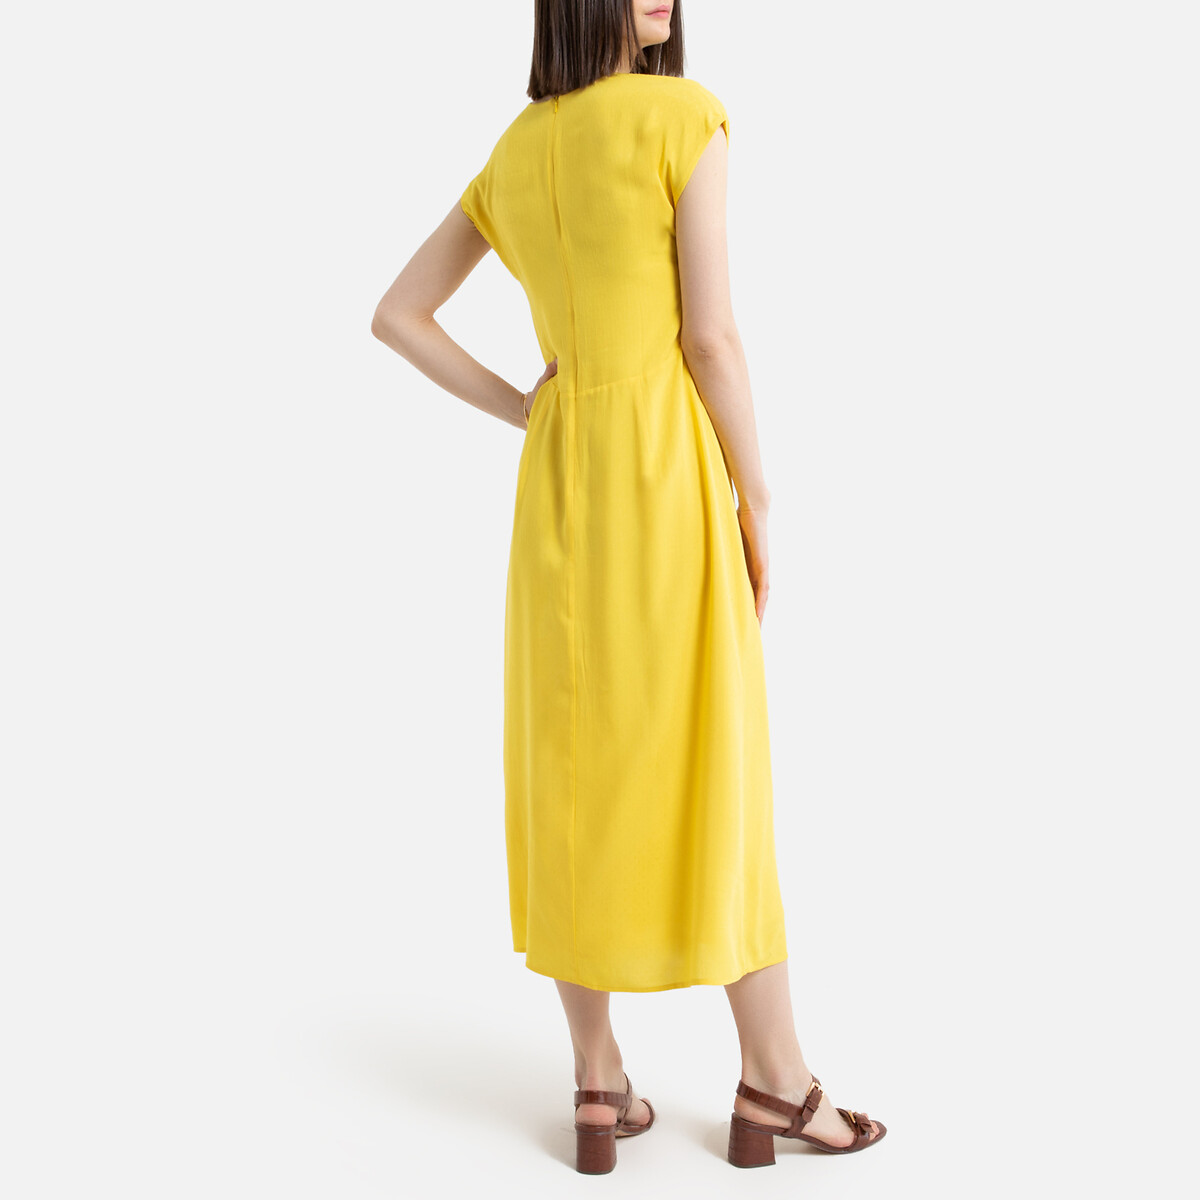 Платье La Redoute Длинное без рукавов 36 (FR) - 42 (RUS) желтый, размер 36 (FR) - 42 (RUS) Длинное без рукавов 36 (FR) - 42 (RUS) желтый - фото 3